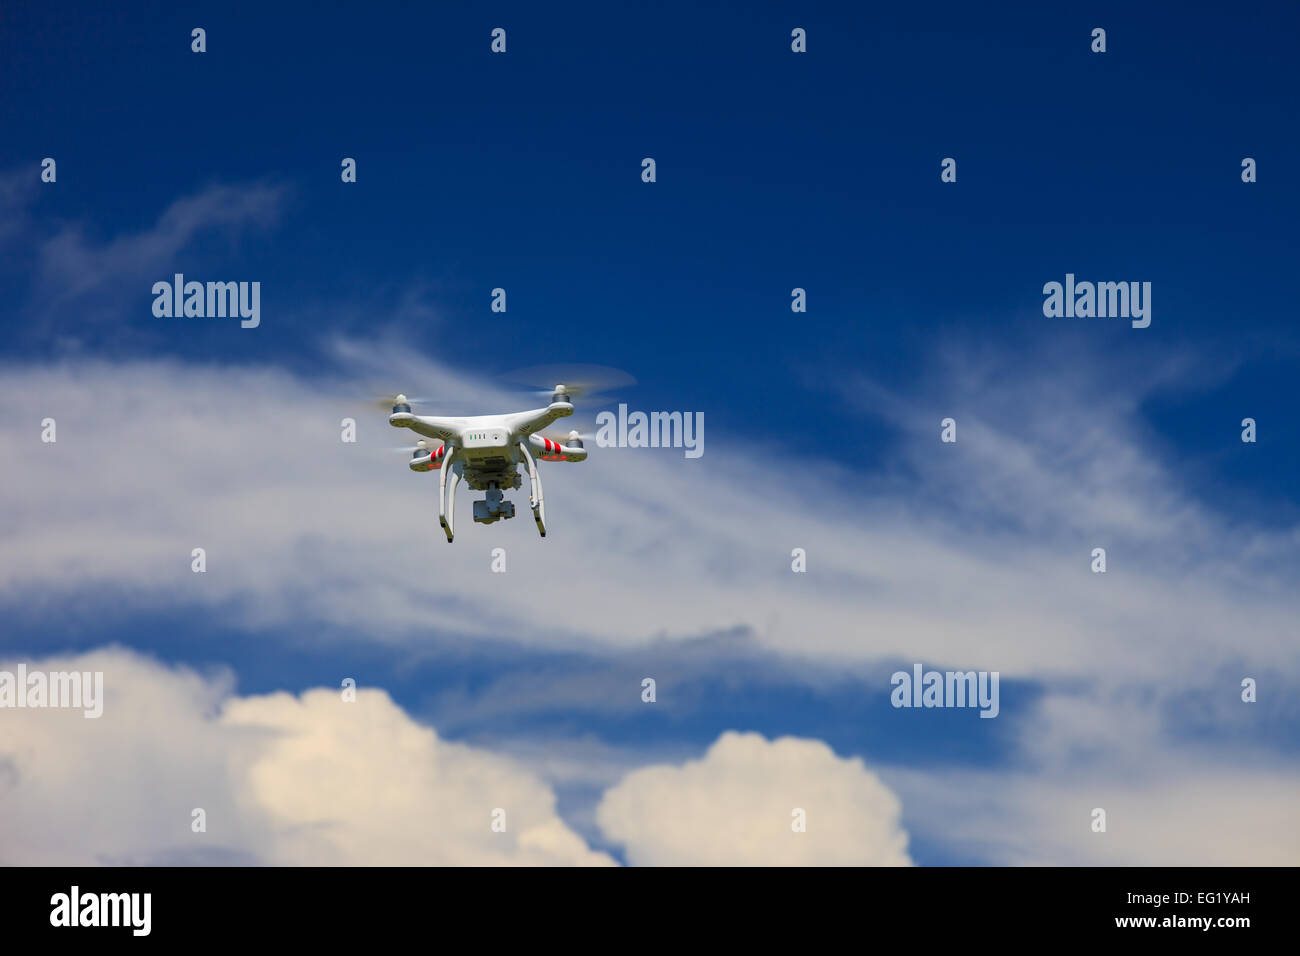 Una vista dal basso di un flying drone con una sospensione cardanica e fotocamera collegata. Drone, fotografia, volare, sorveglianza Foto Stock